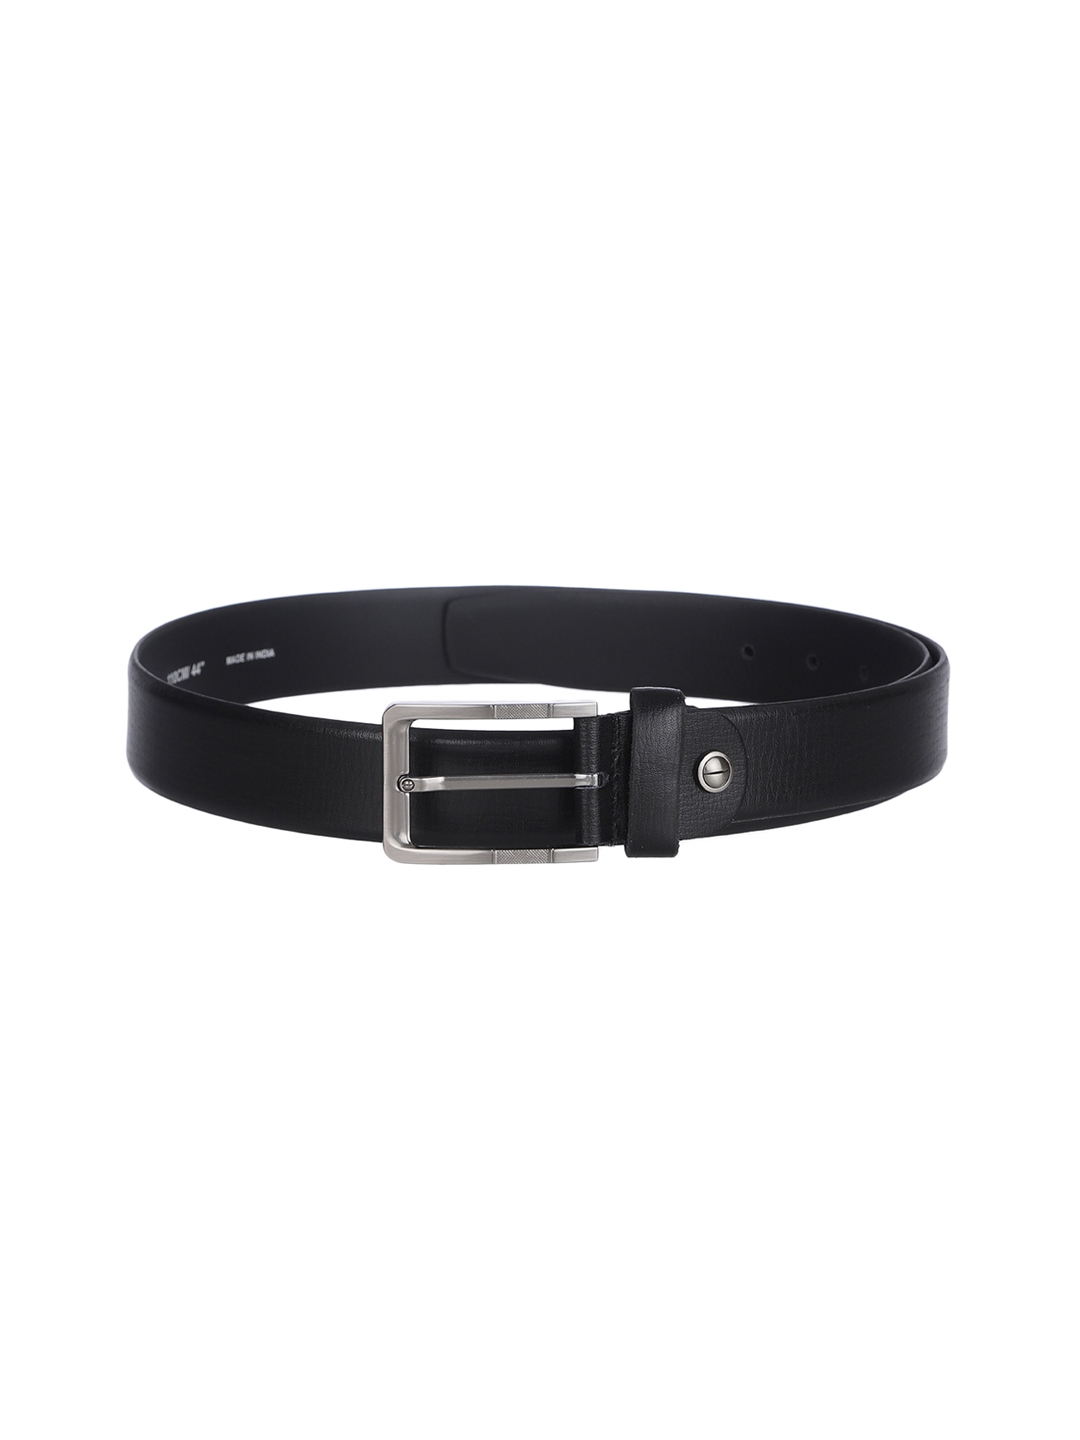 Buy Kara Men Black Solid Leather Belt - Belts for Men 10897770 | Myntra